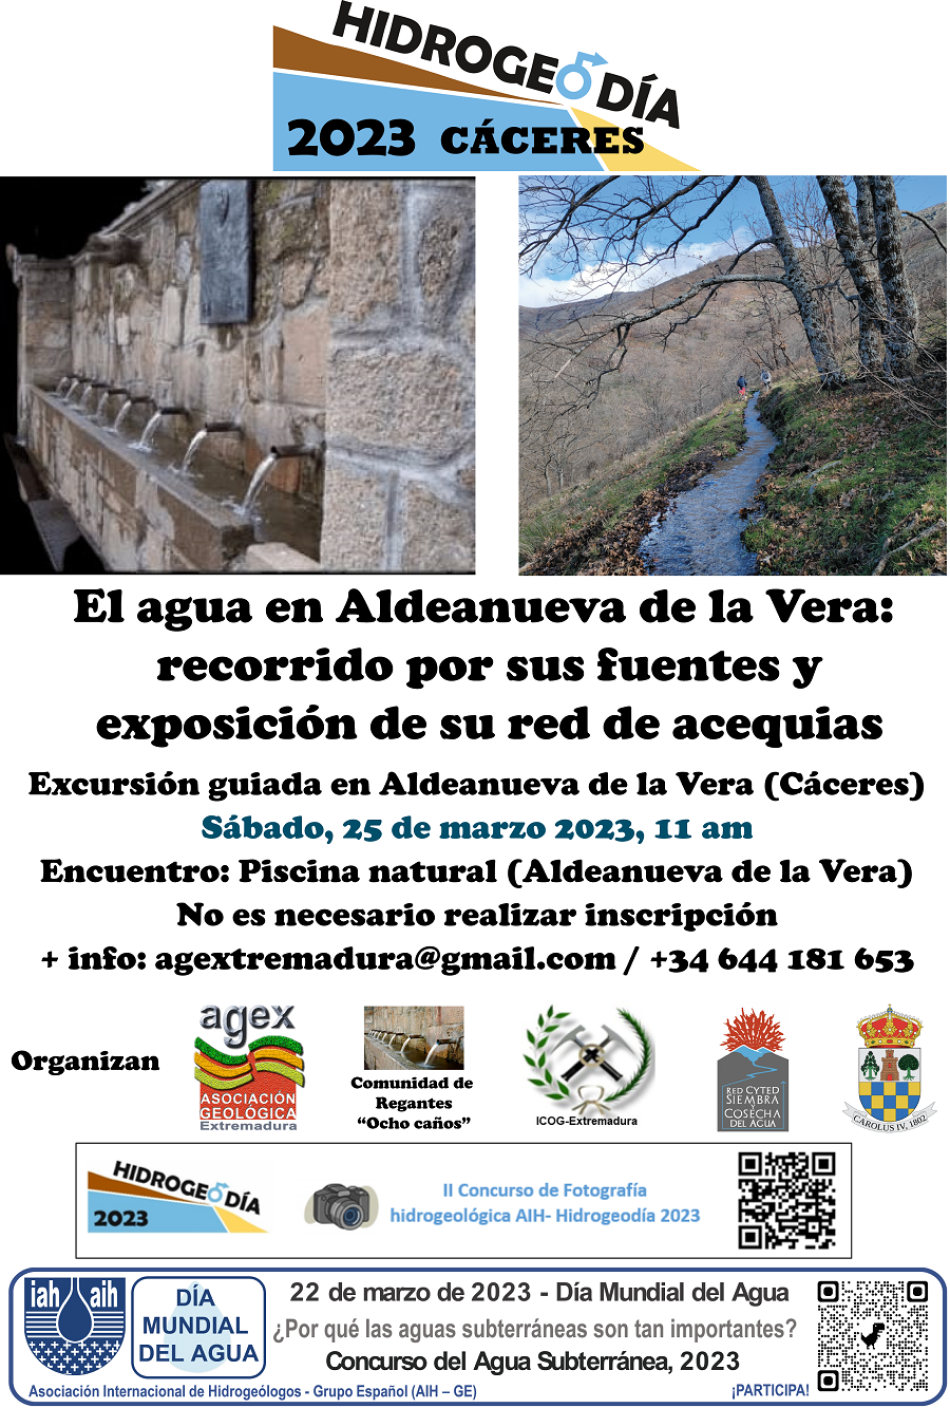 Jornada de divulgación hidrogeológica en Aldeanueva de la Vera (Cáceres) con motivo del Día Mundial del Agua